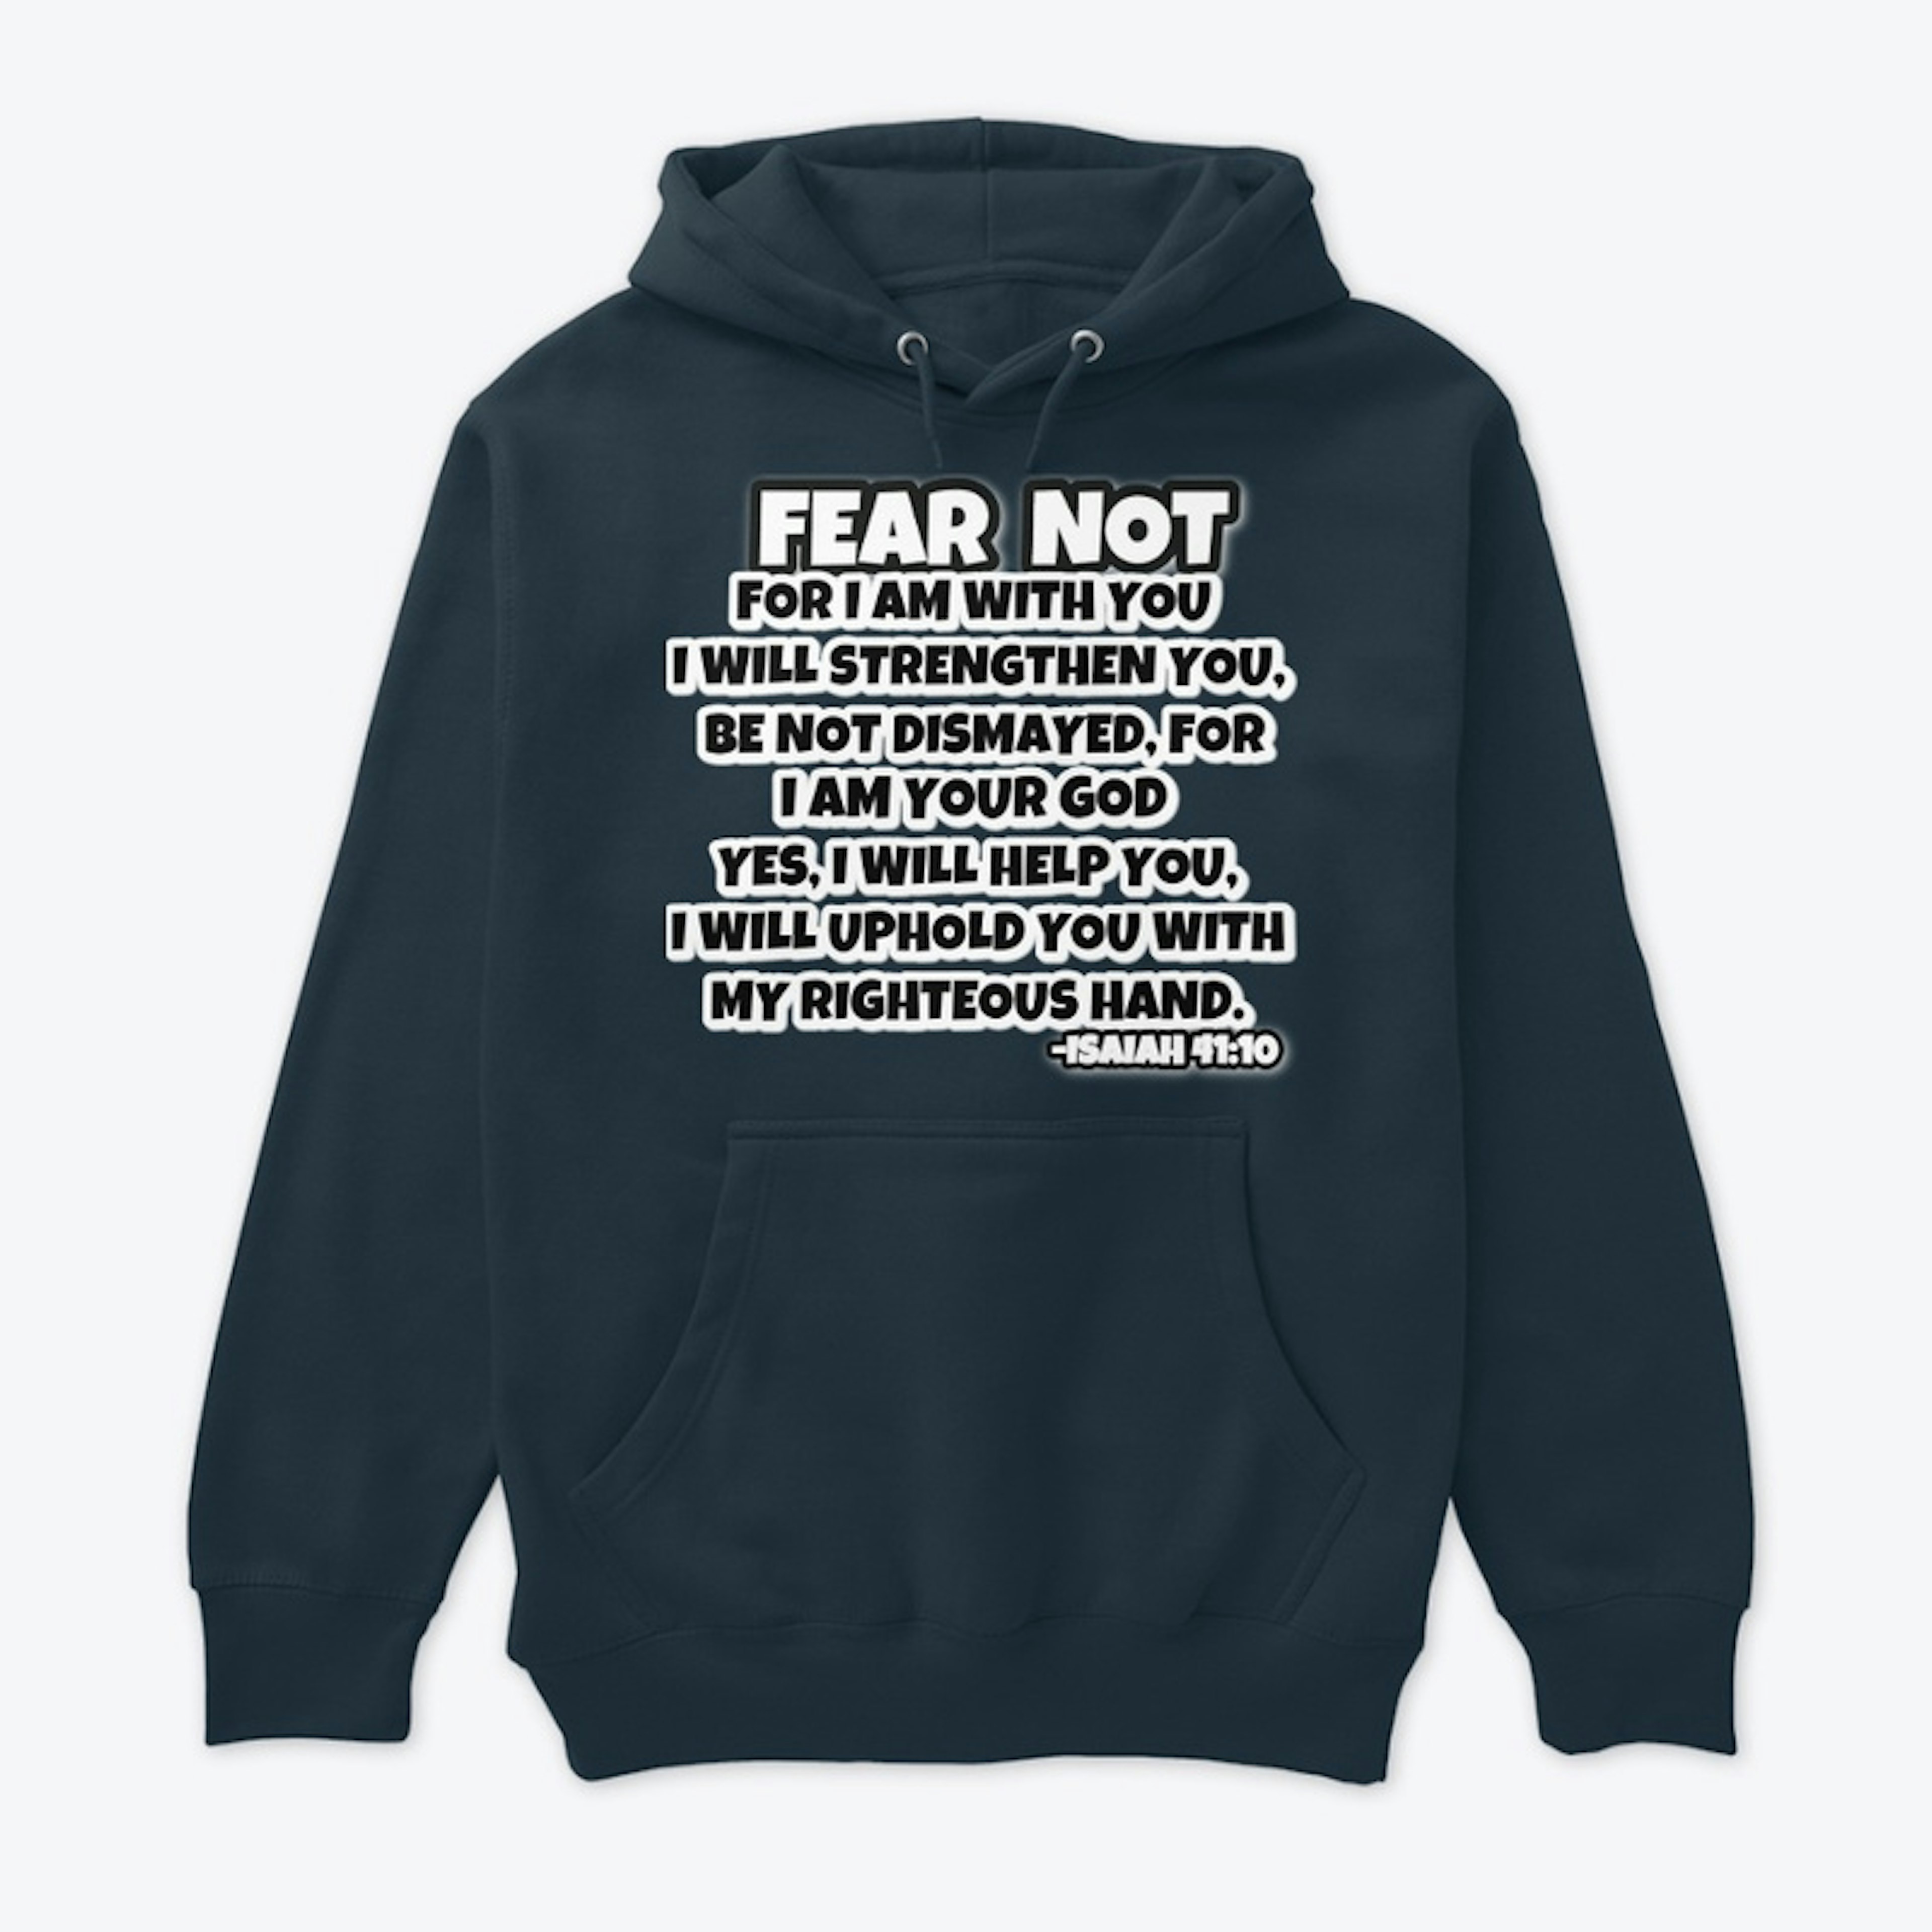 HAVE NO FEAR